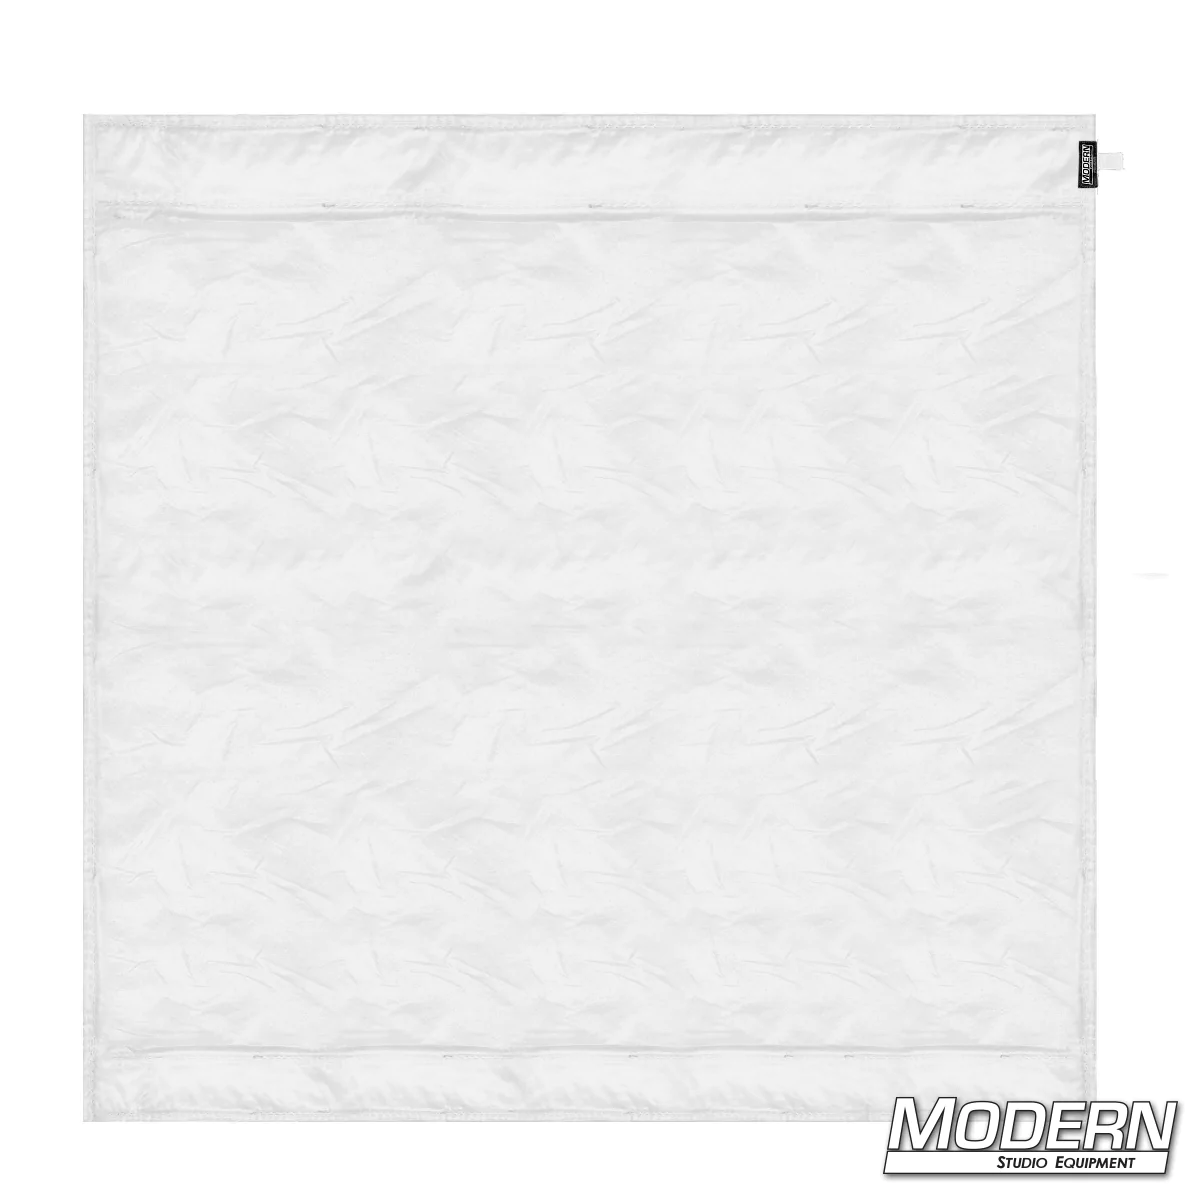 8' Wag Flag Fabric - Silent 1/2 Grid Cloth